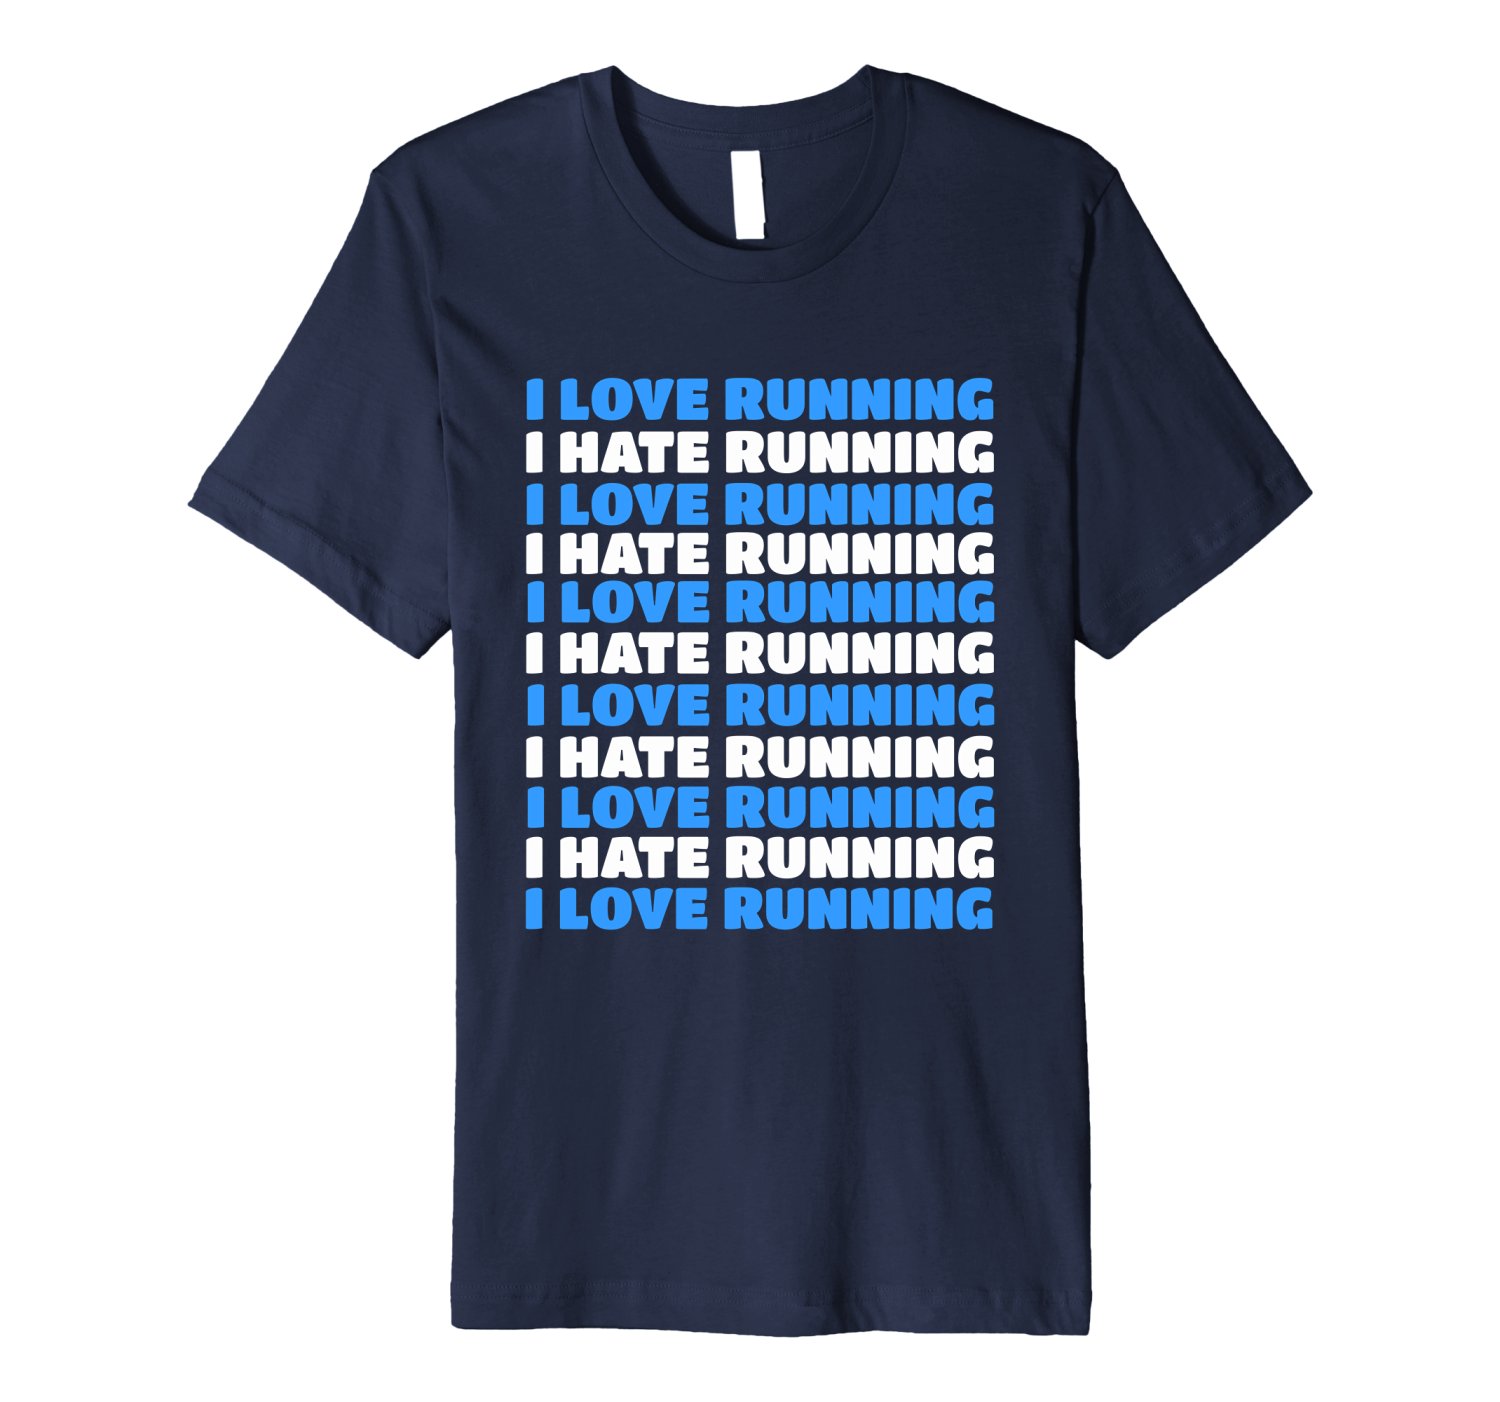 Runner Gift 2018: I Love Running I Hate Running T-Shirt 2022